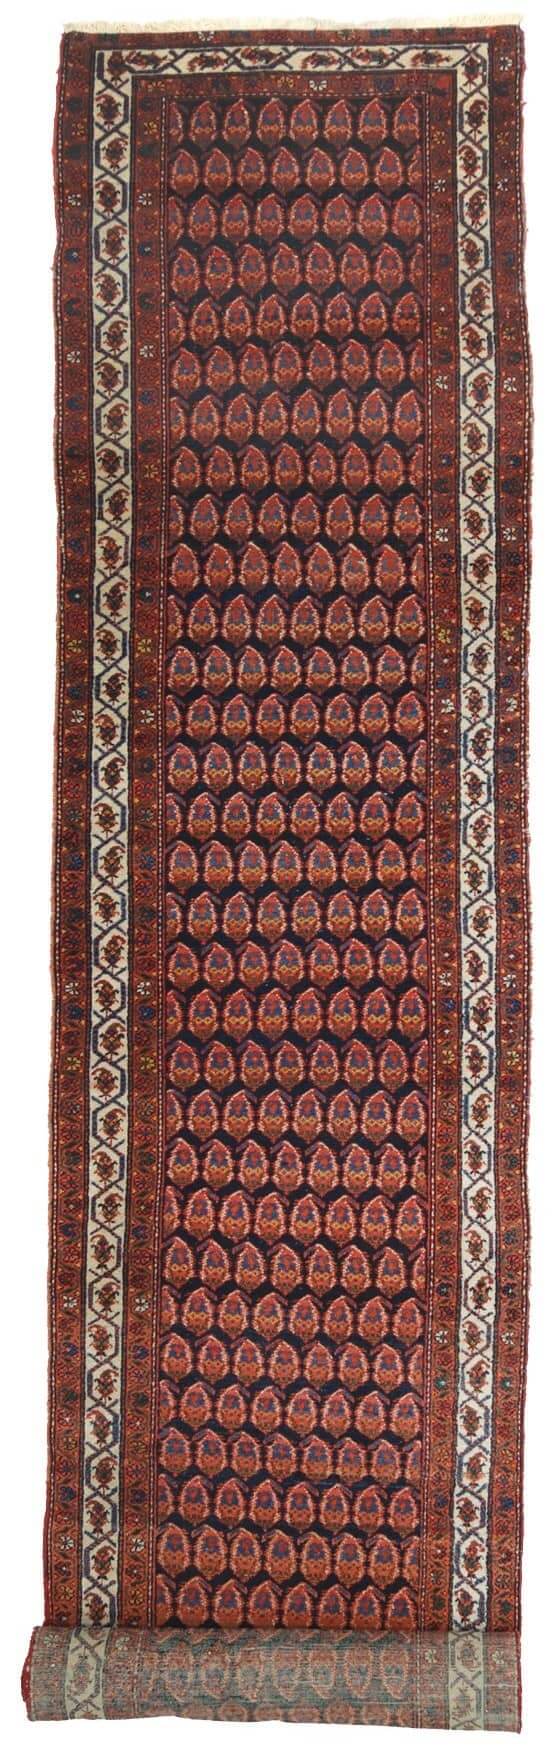 Passatoia corridoio persiano » Fantastici tappeti per la tua casa -  Trendcarpet